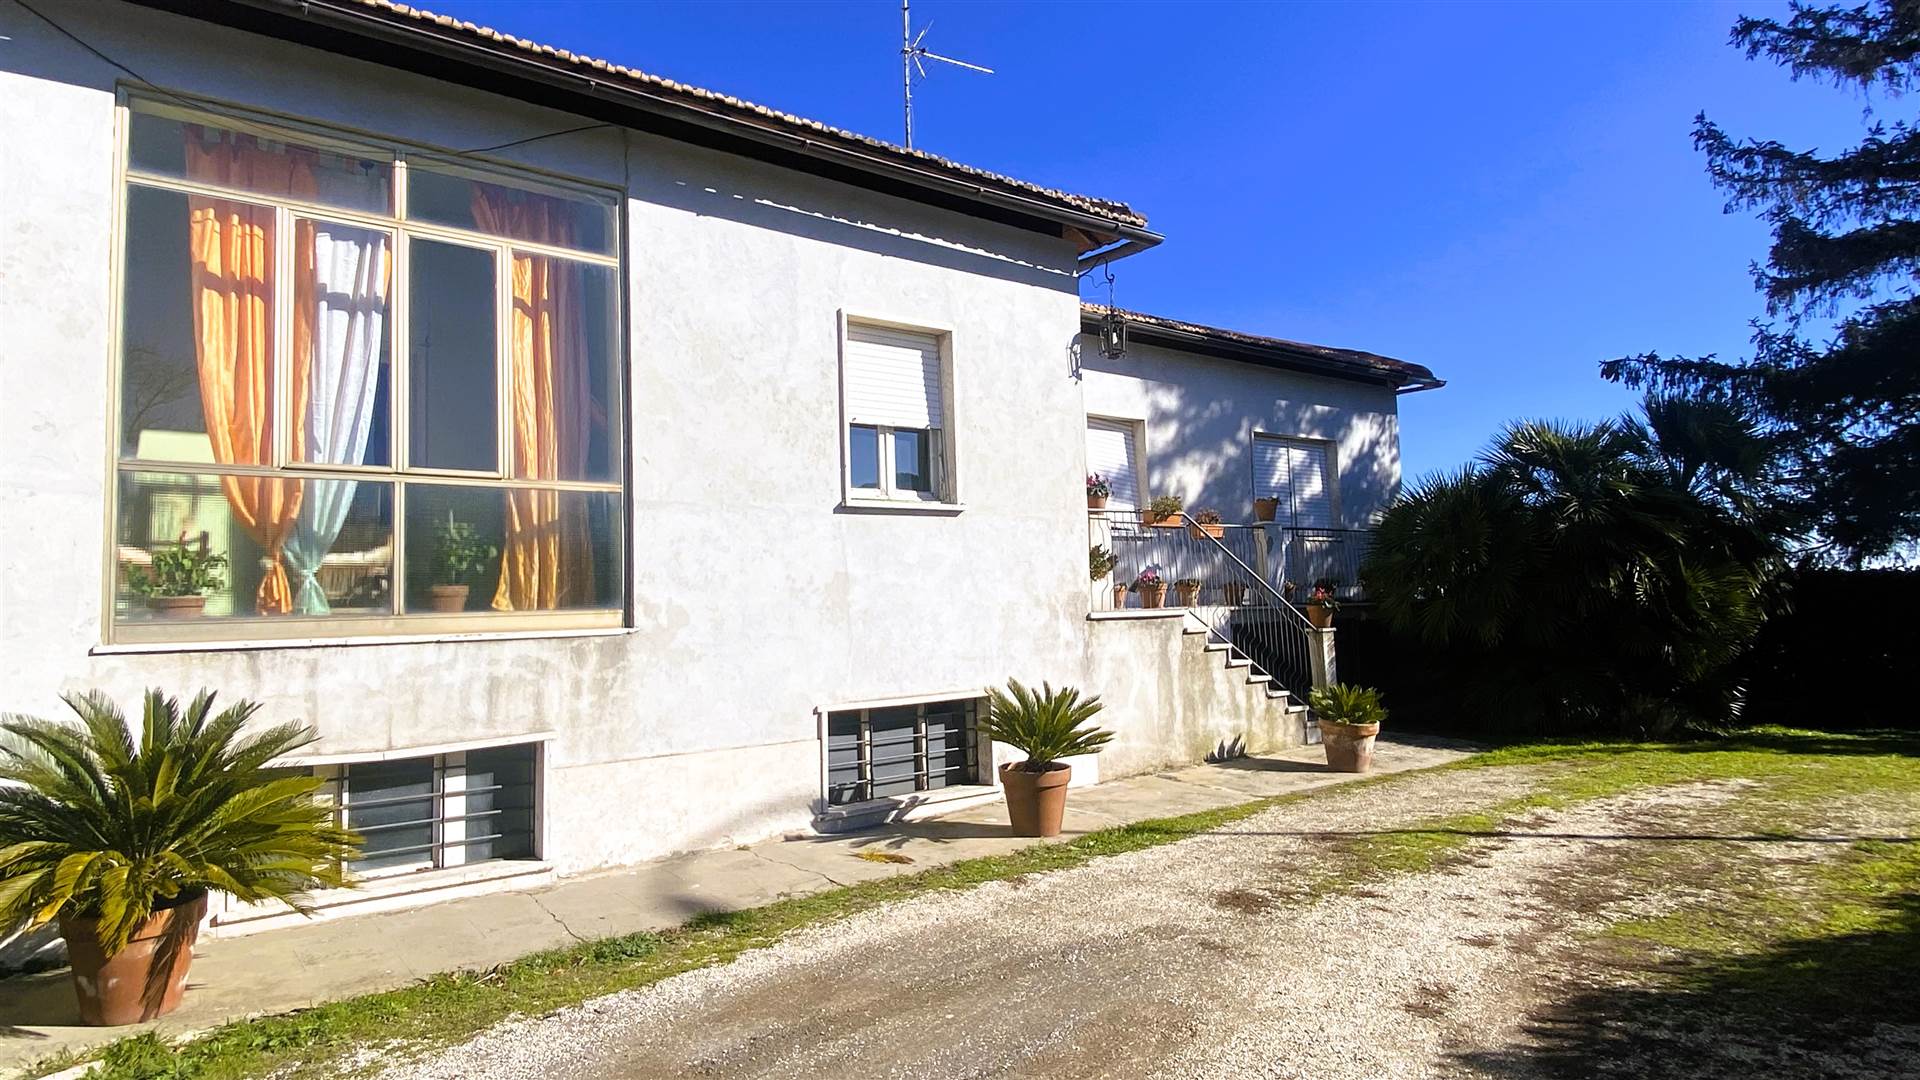 Villa in vendita a Montefiascone, 6 locali, prezzo € 220.000 | PortaleAgenzieImmobiliari.it